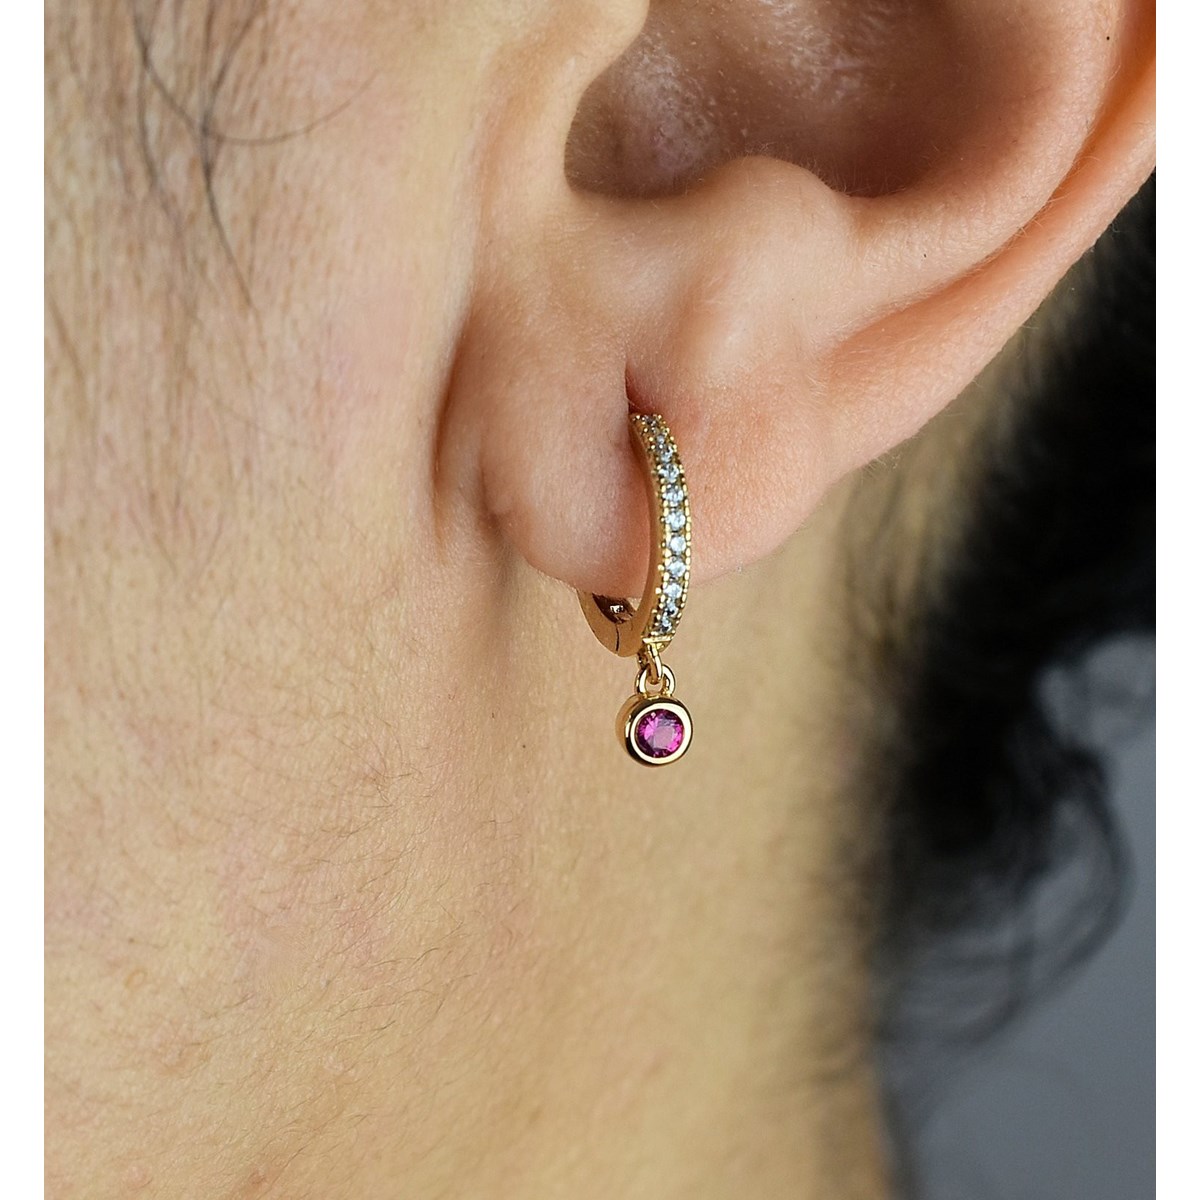 Boucles d'oreilles mini créole sertie d'oxyde de zirconium rose Plaqué or 750 3 microns - vue 2